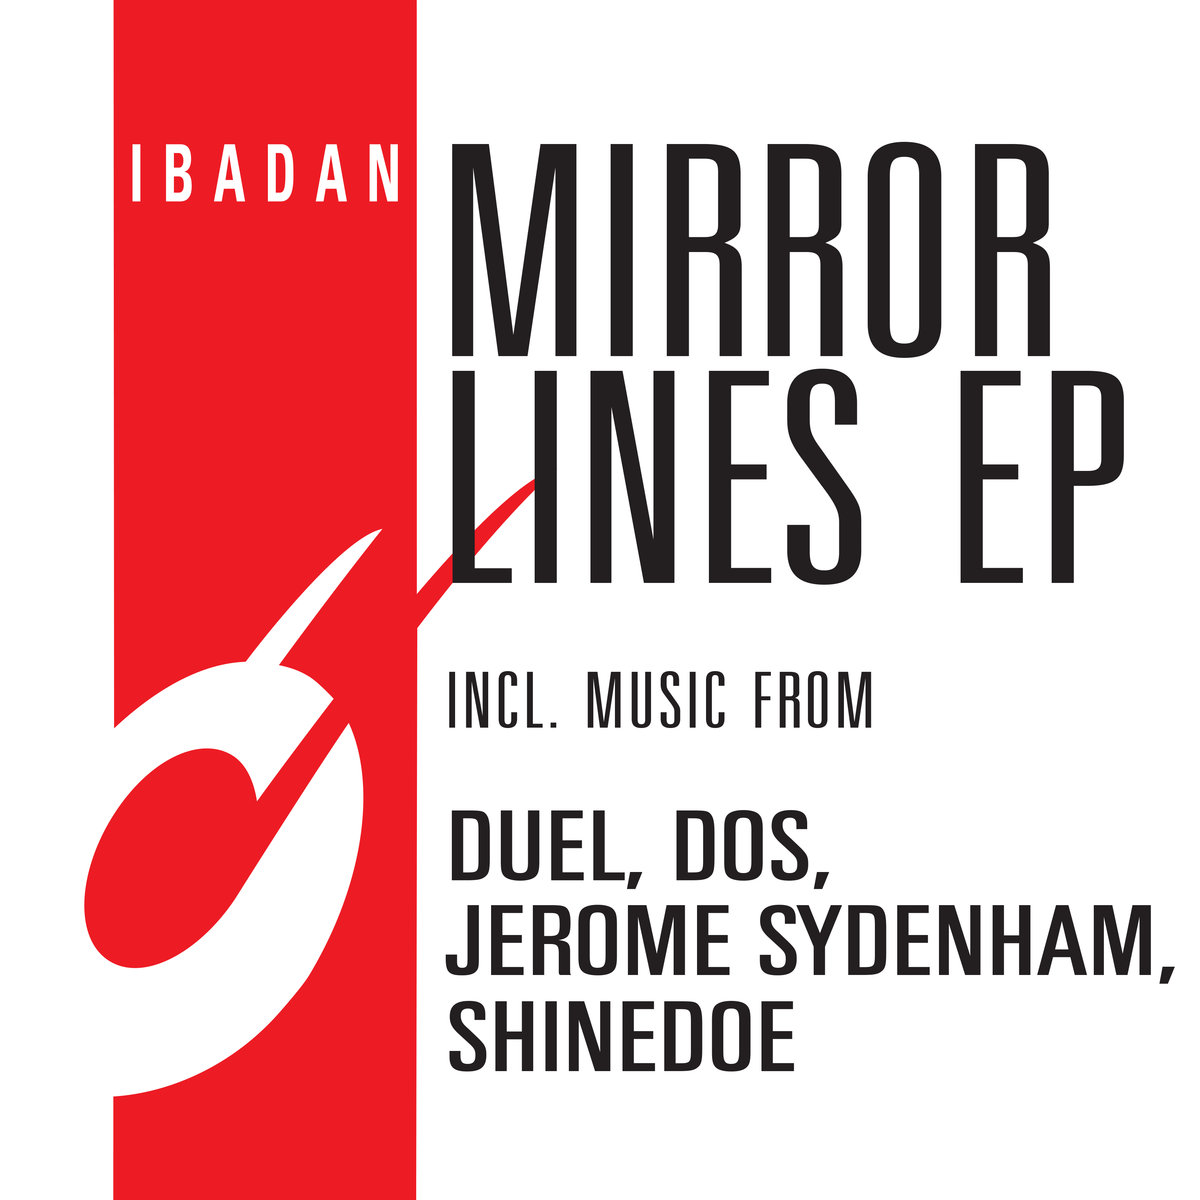 VA - Mirror Lines EP / irc132